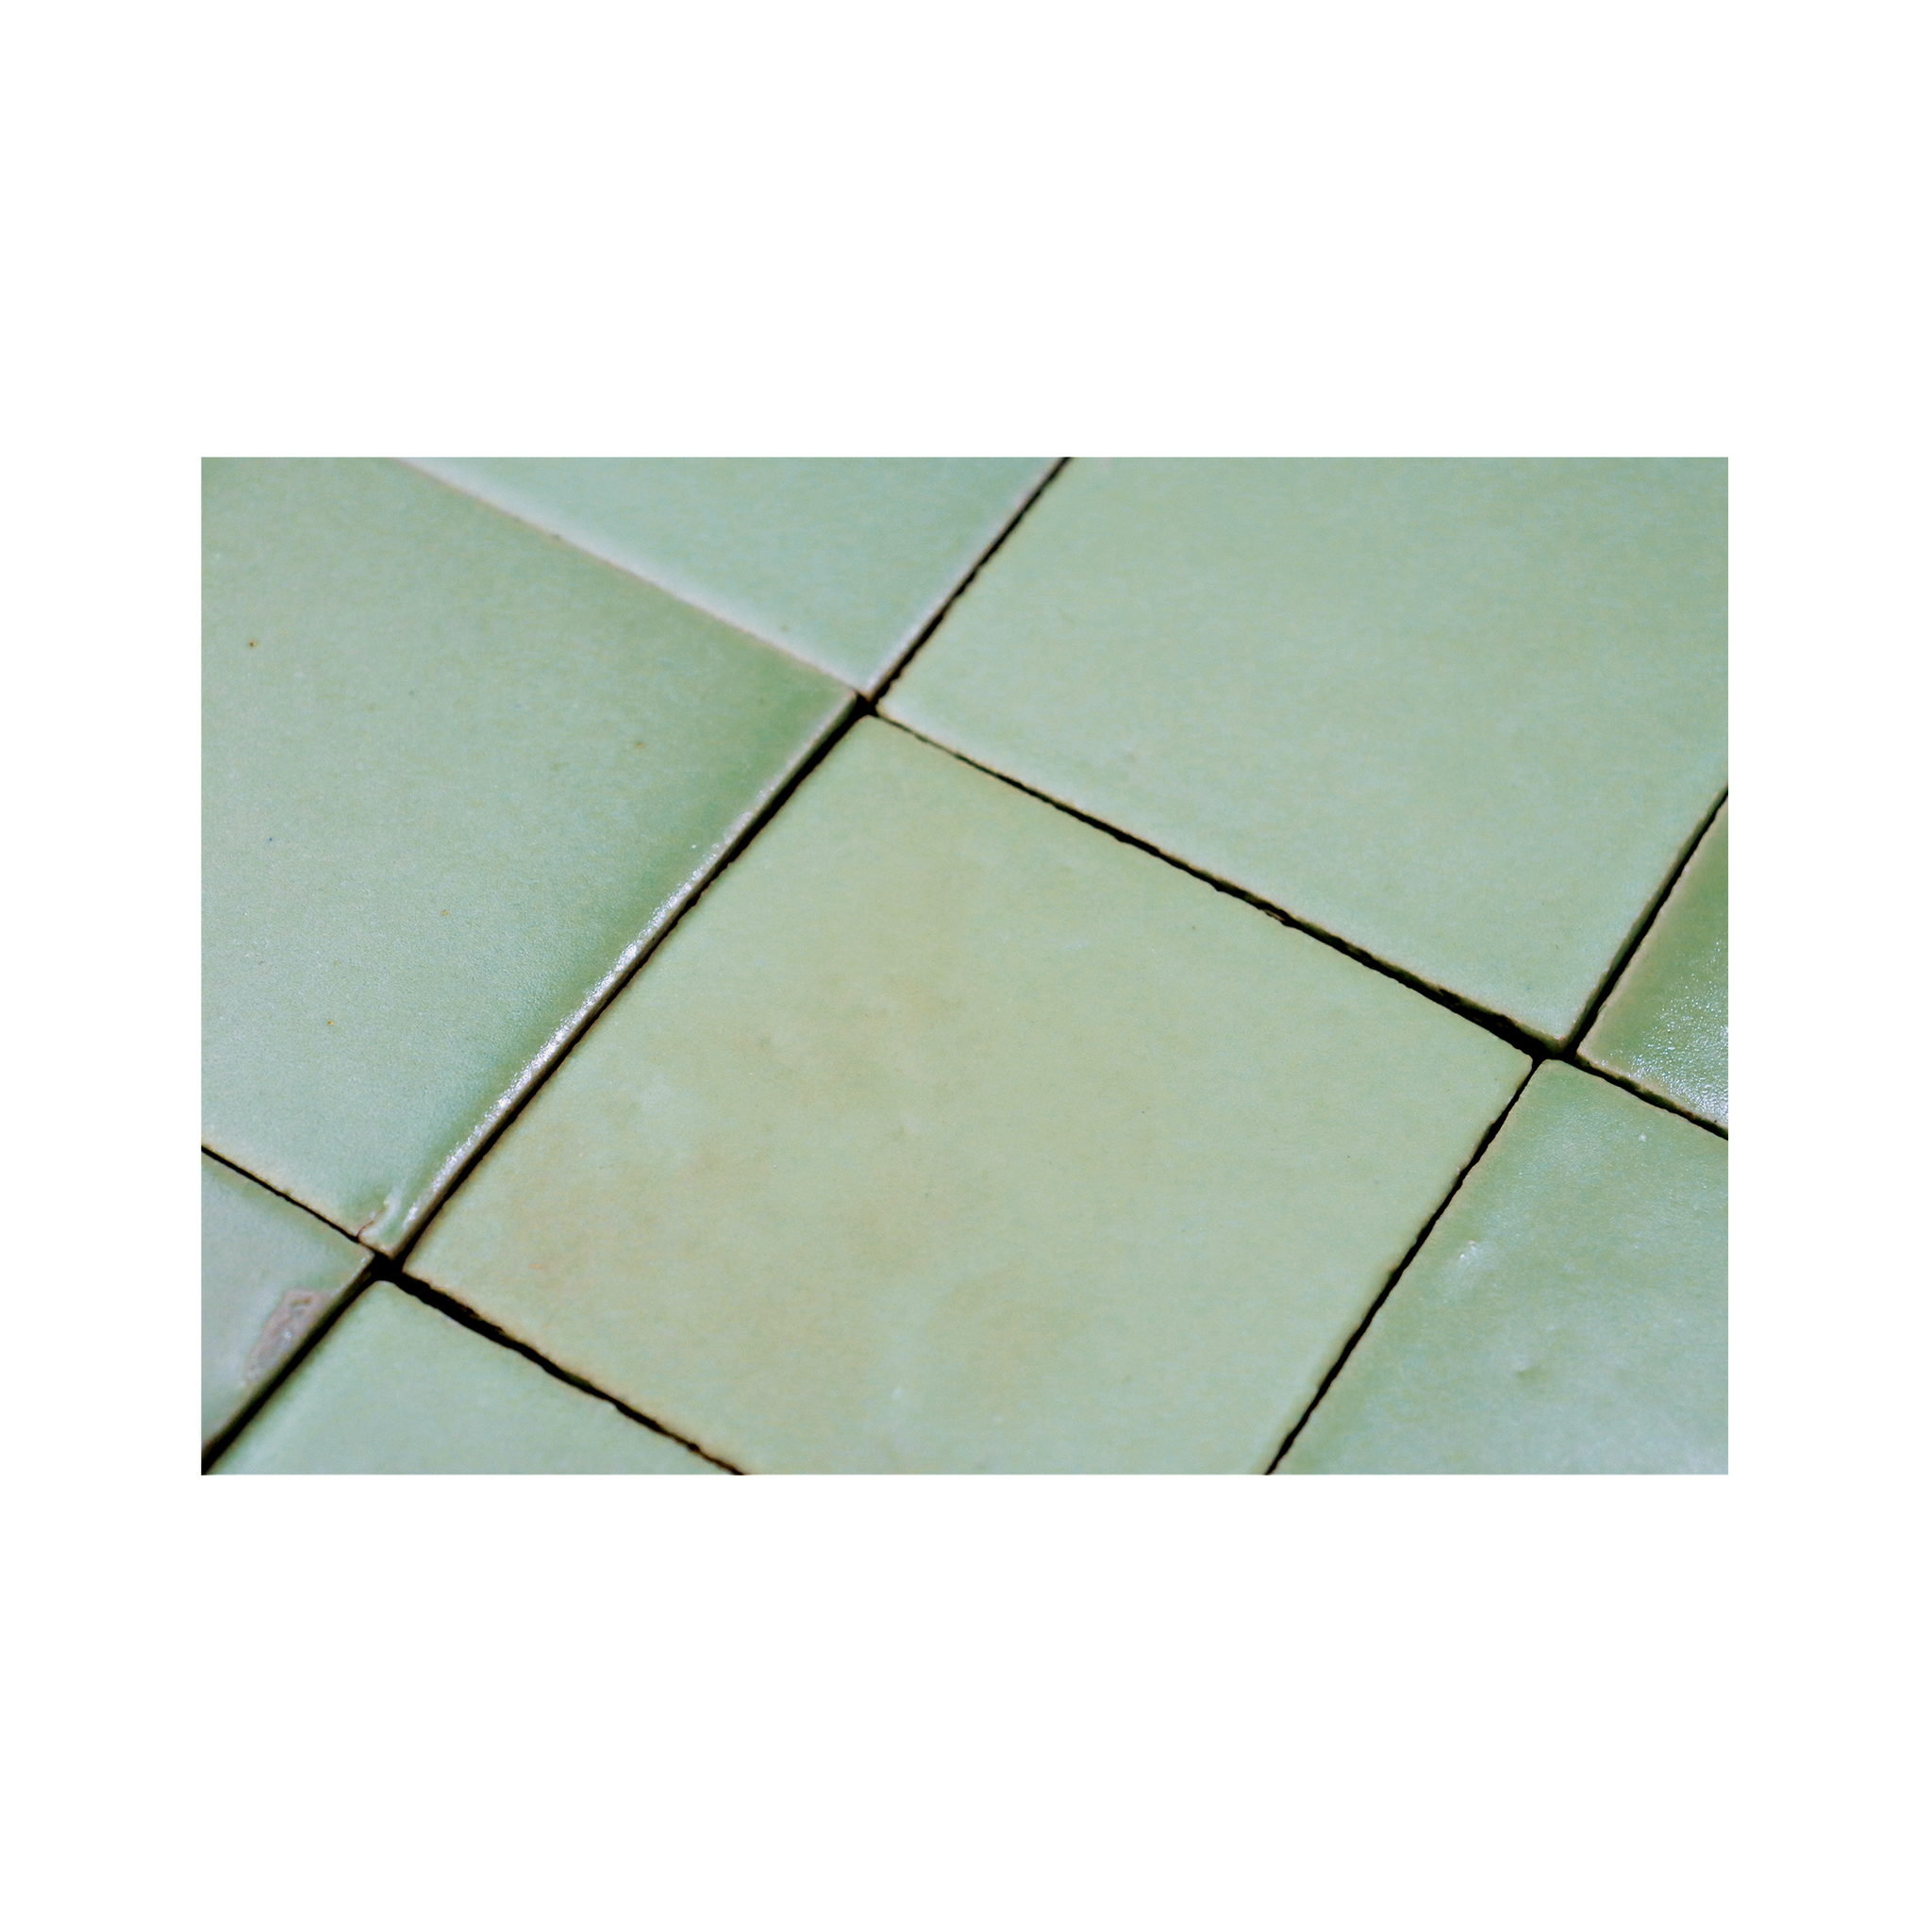 Stoneware 3.5x3.5 Seafoam Green Matte Tile